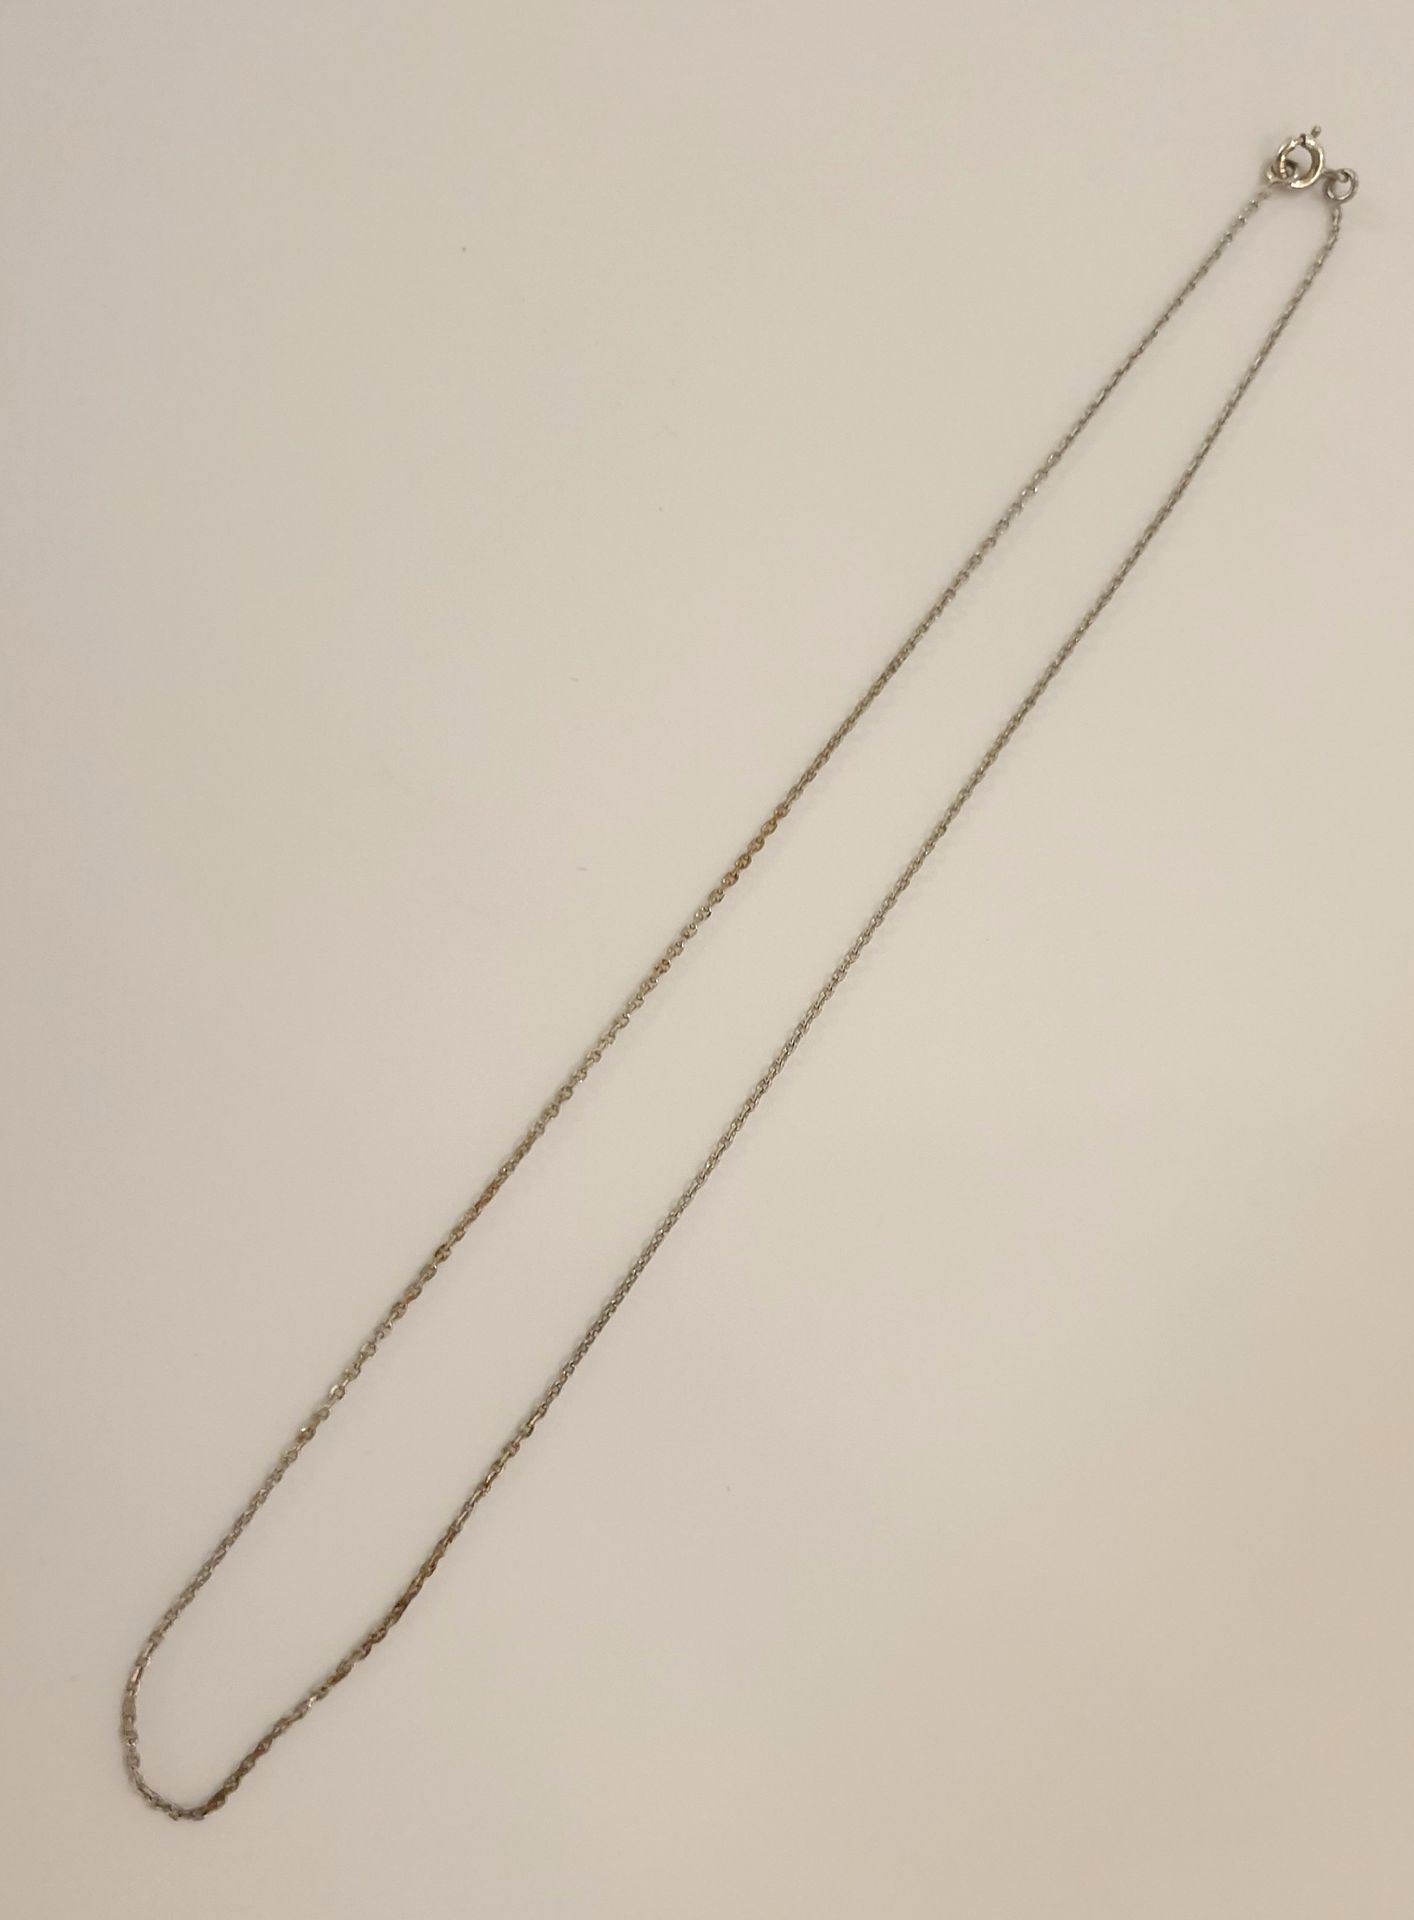 Null Chaine en argent 925 
L. 41,5 cm
Poids: 1,71 g. Env.